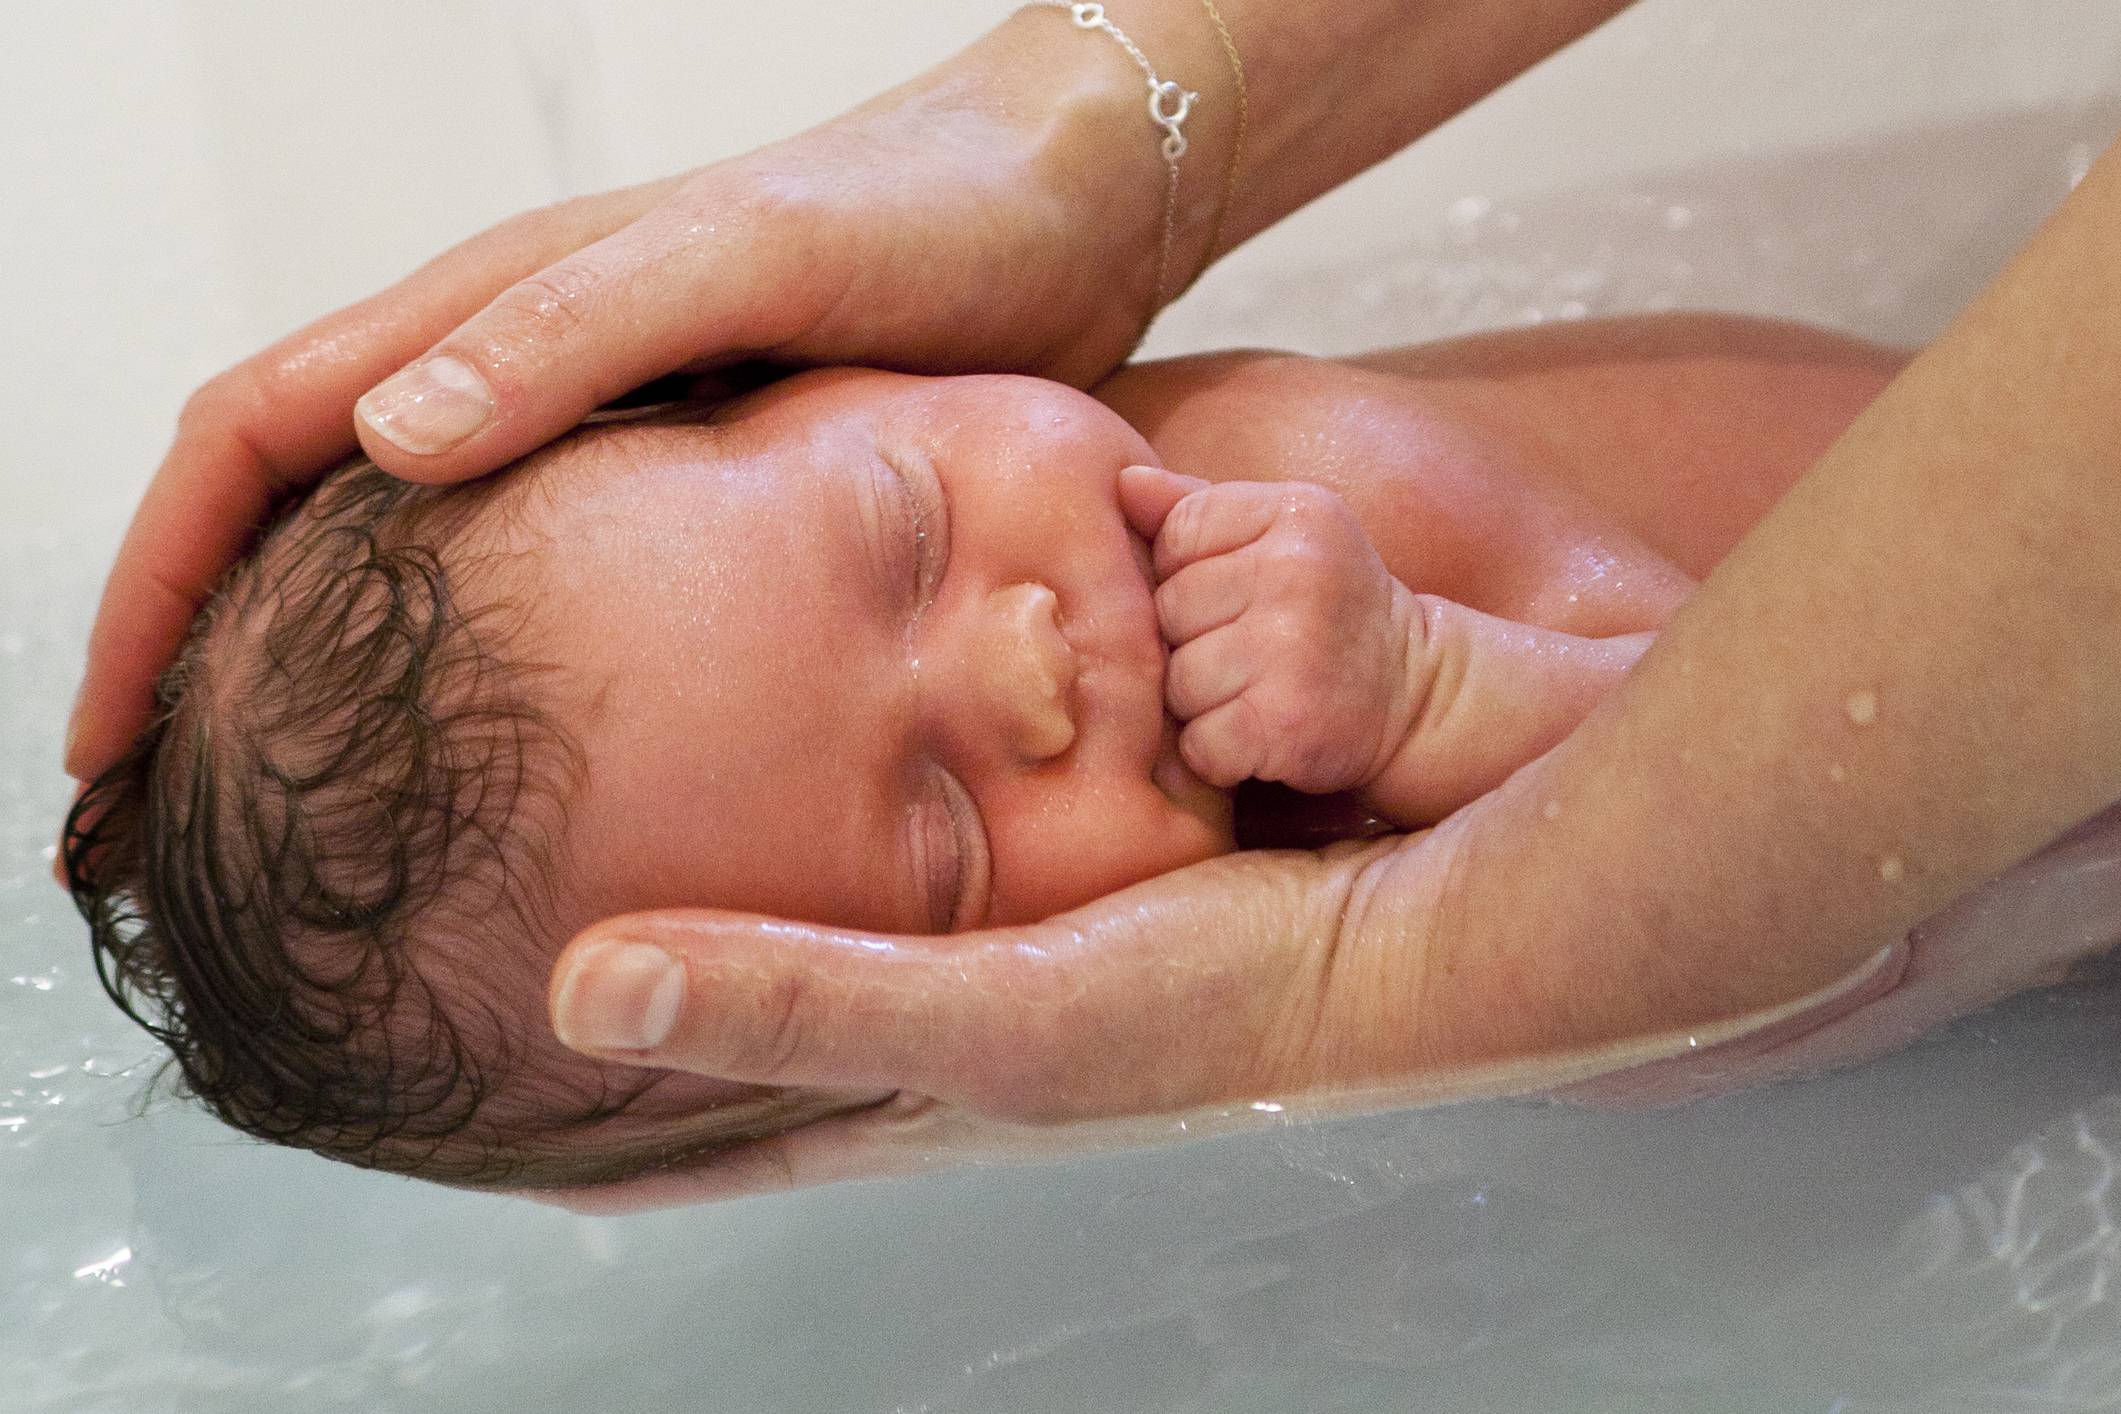 Почему новорожденный ребенок плачет при купании